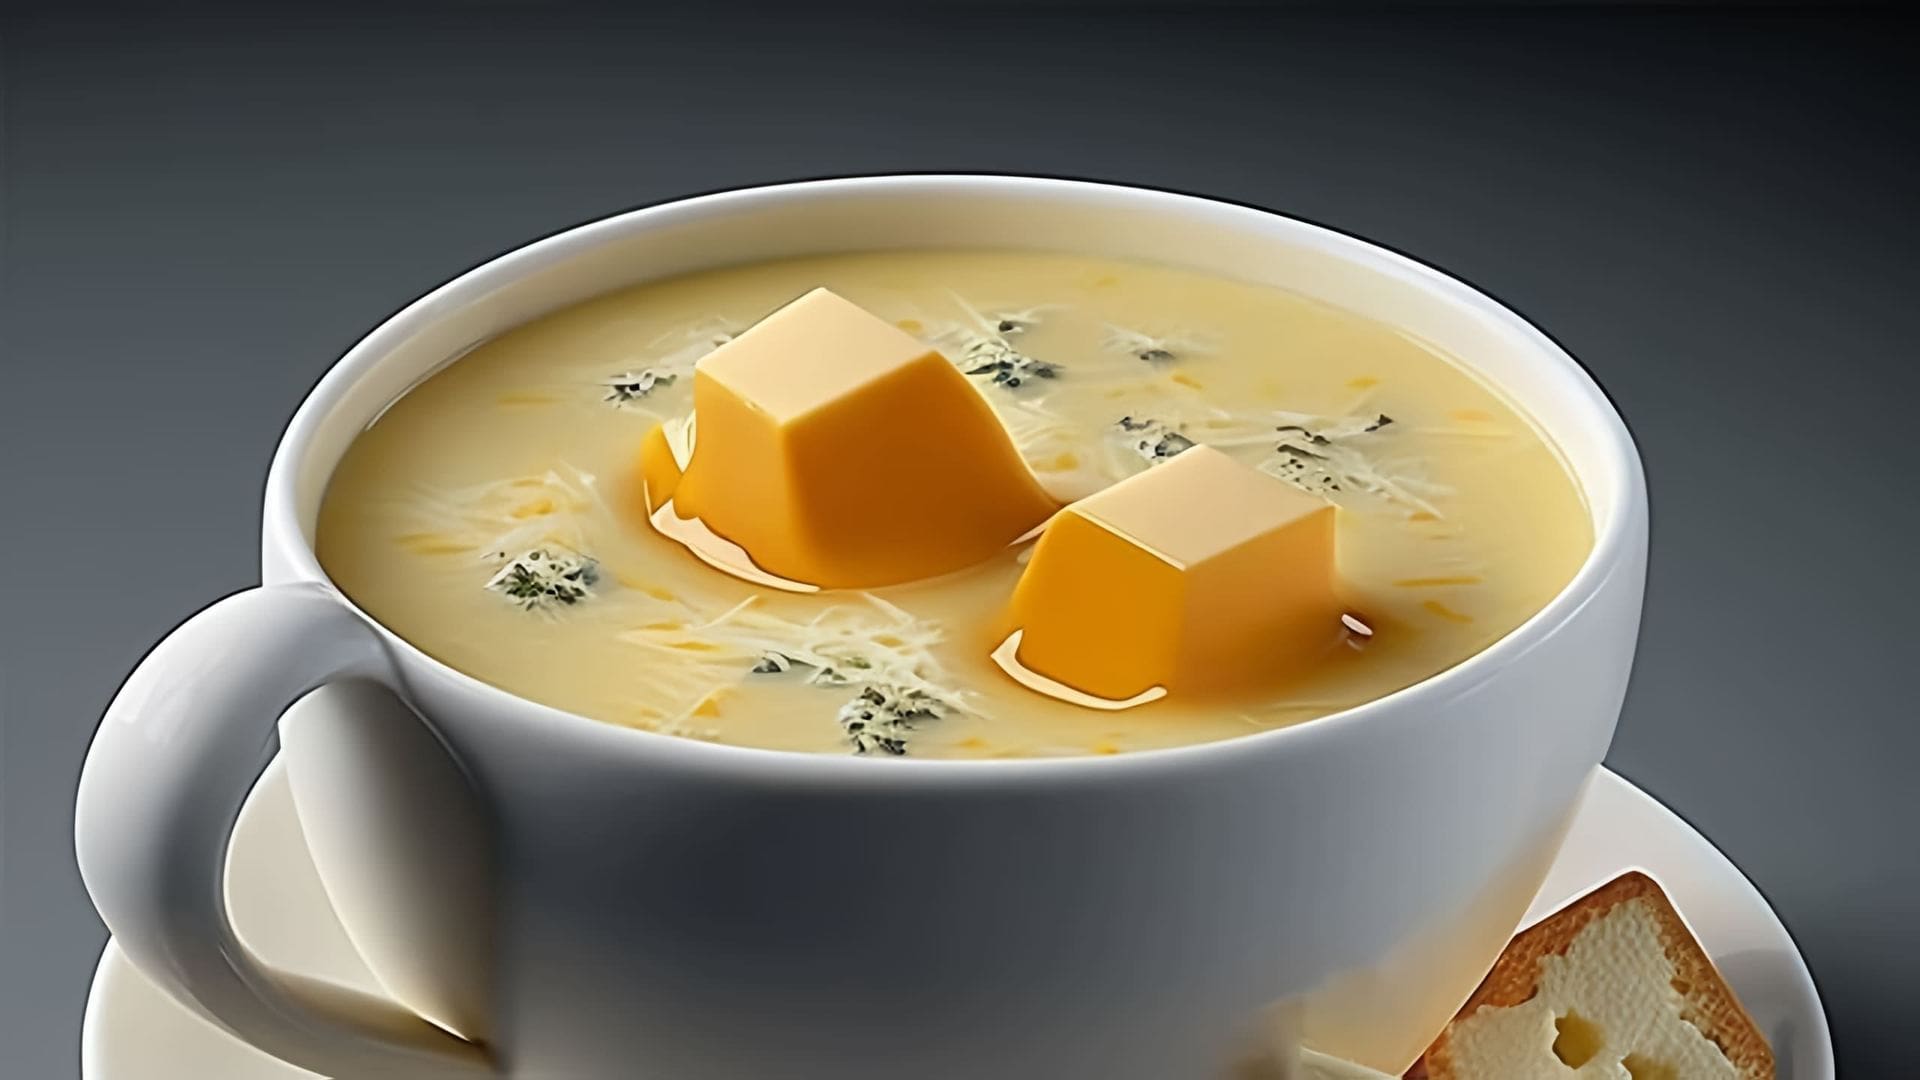 В этом видео демонстрируется простой рецепт сырного супа, который можно приготовить из настоящего сыра